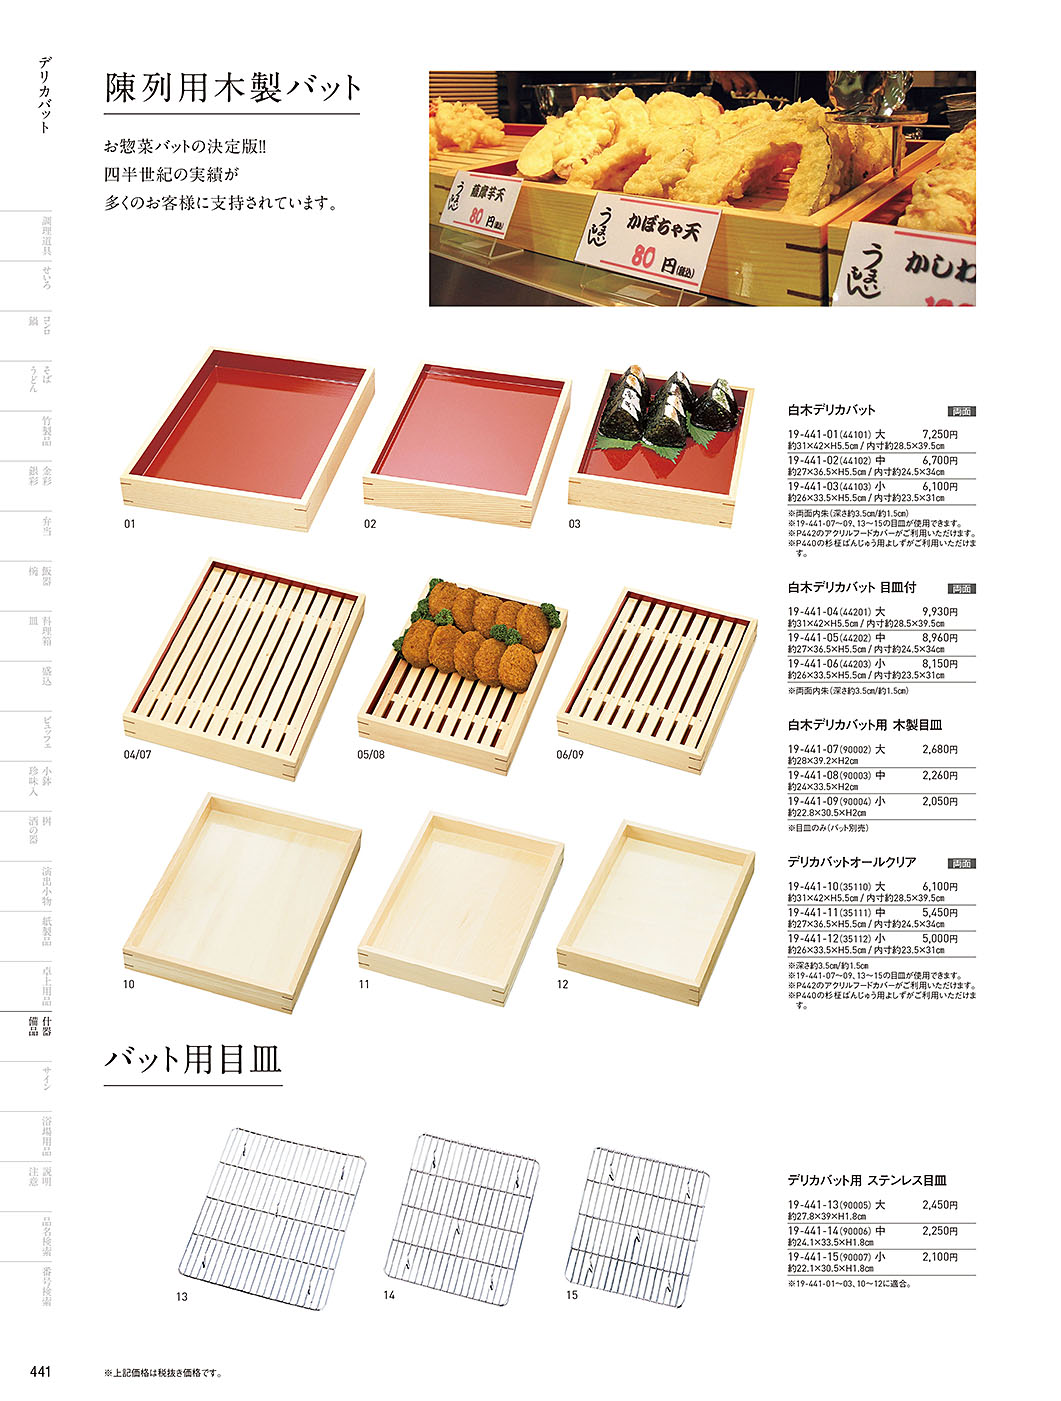 和食器カタログ P.441-陳列備品／木箱･デリカバット